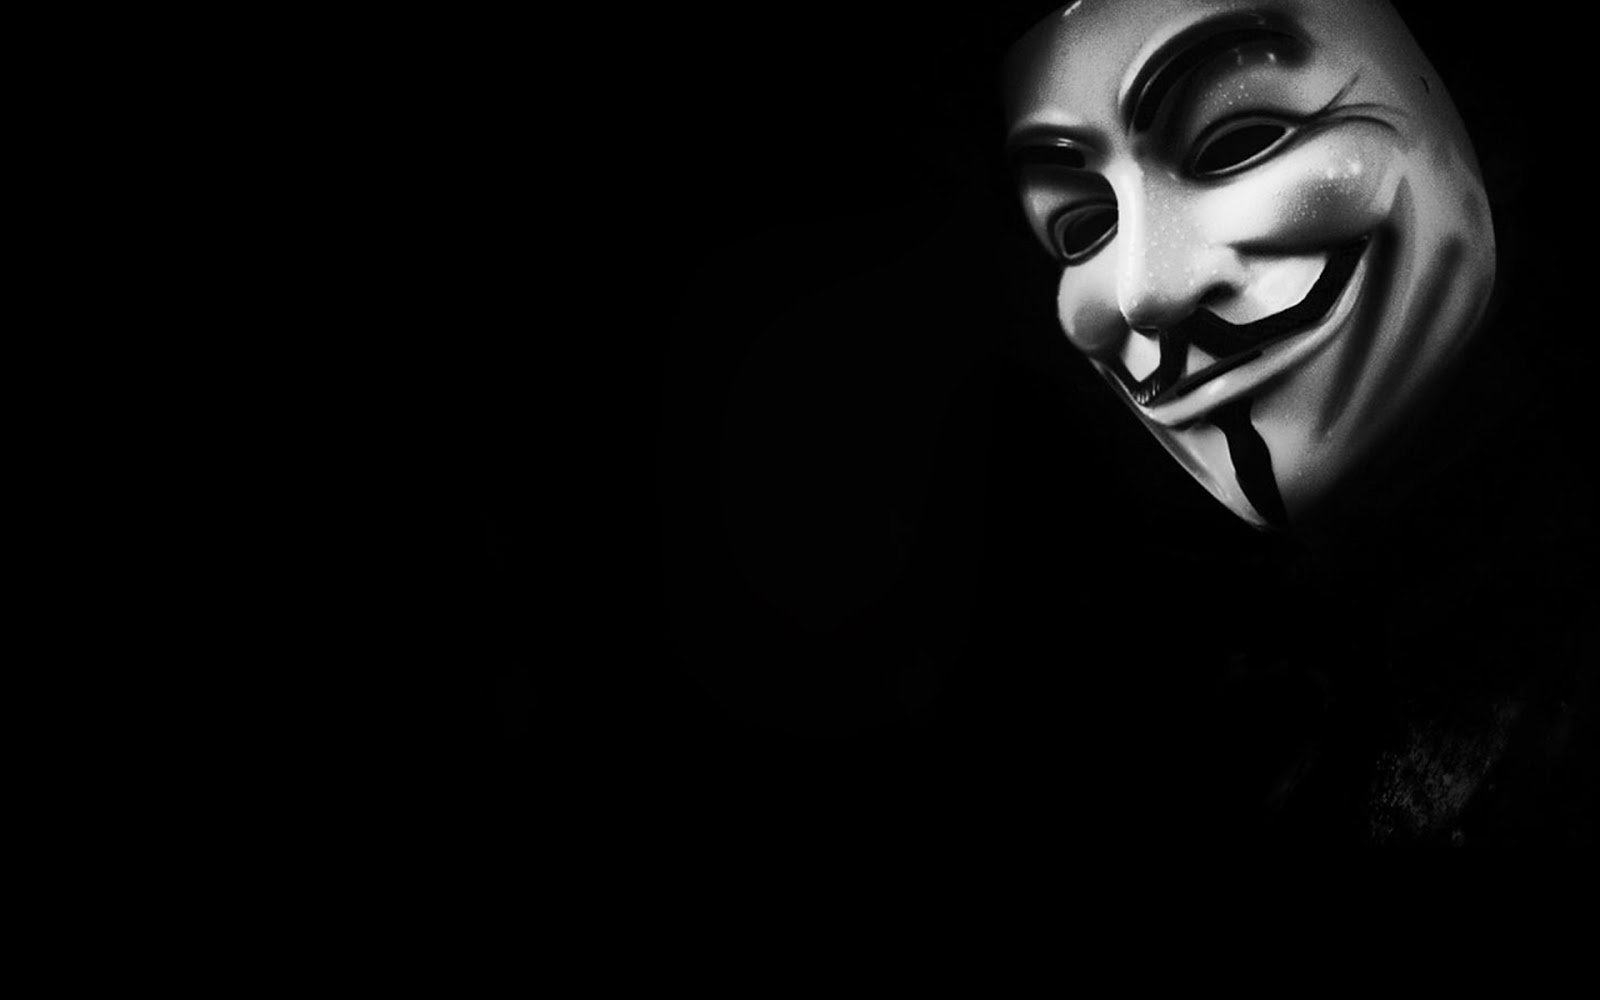 sfondo di hacker hd 1366x768,nero,viso,buio,testa,bianco e nero